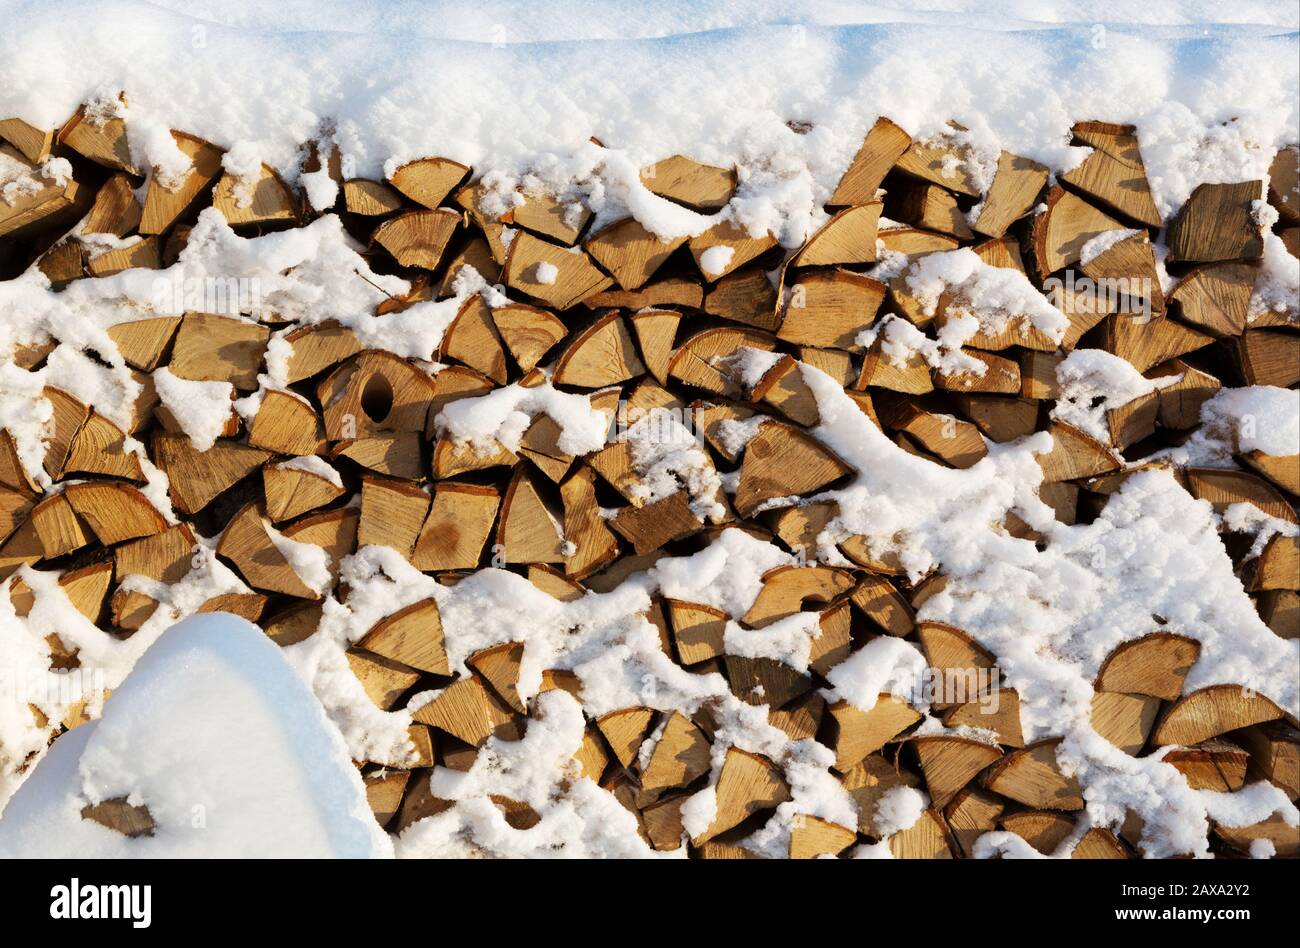 Couper le bois de chauffage de la pile de bois de chauffage d'hiver. Bois de chauffage d'hiver empilé. Bois de chauffage recouvert de neige dans la région de Leningrad. Russie. Banque D'Images